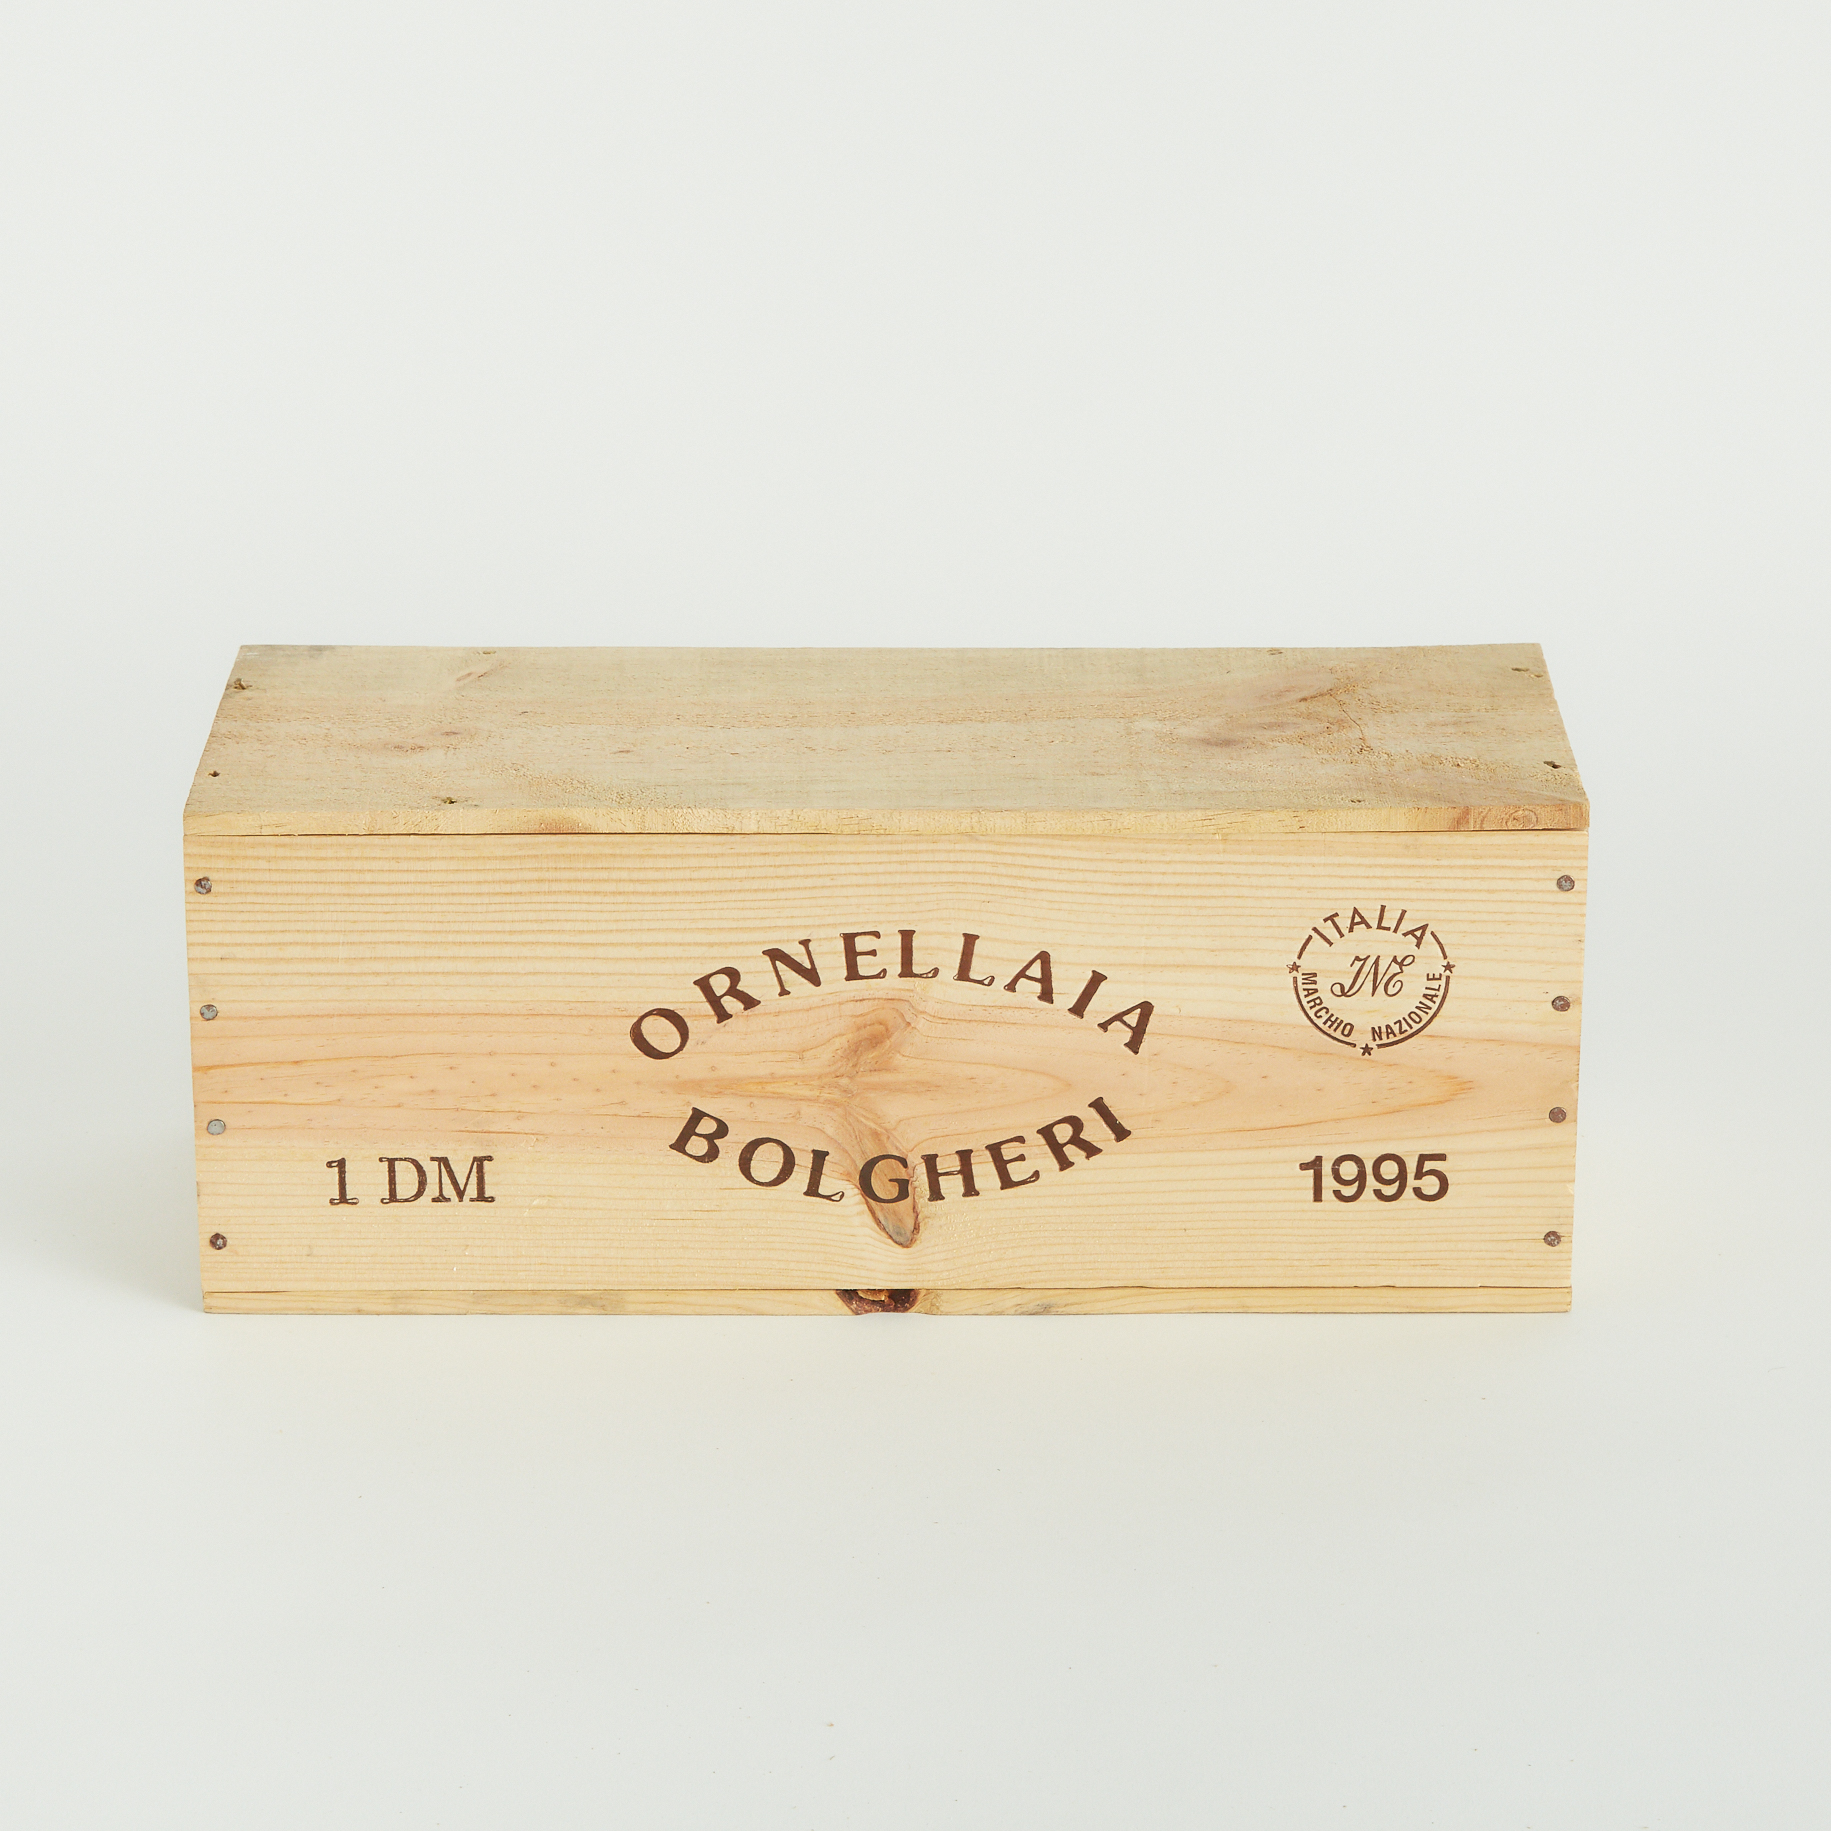 TENUTA DELL`ORNELLAIA BOLGHERI SUPERIORE ORNELLAIA 1995 (1 3 LTR., OWC)